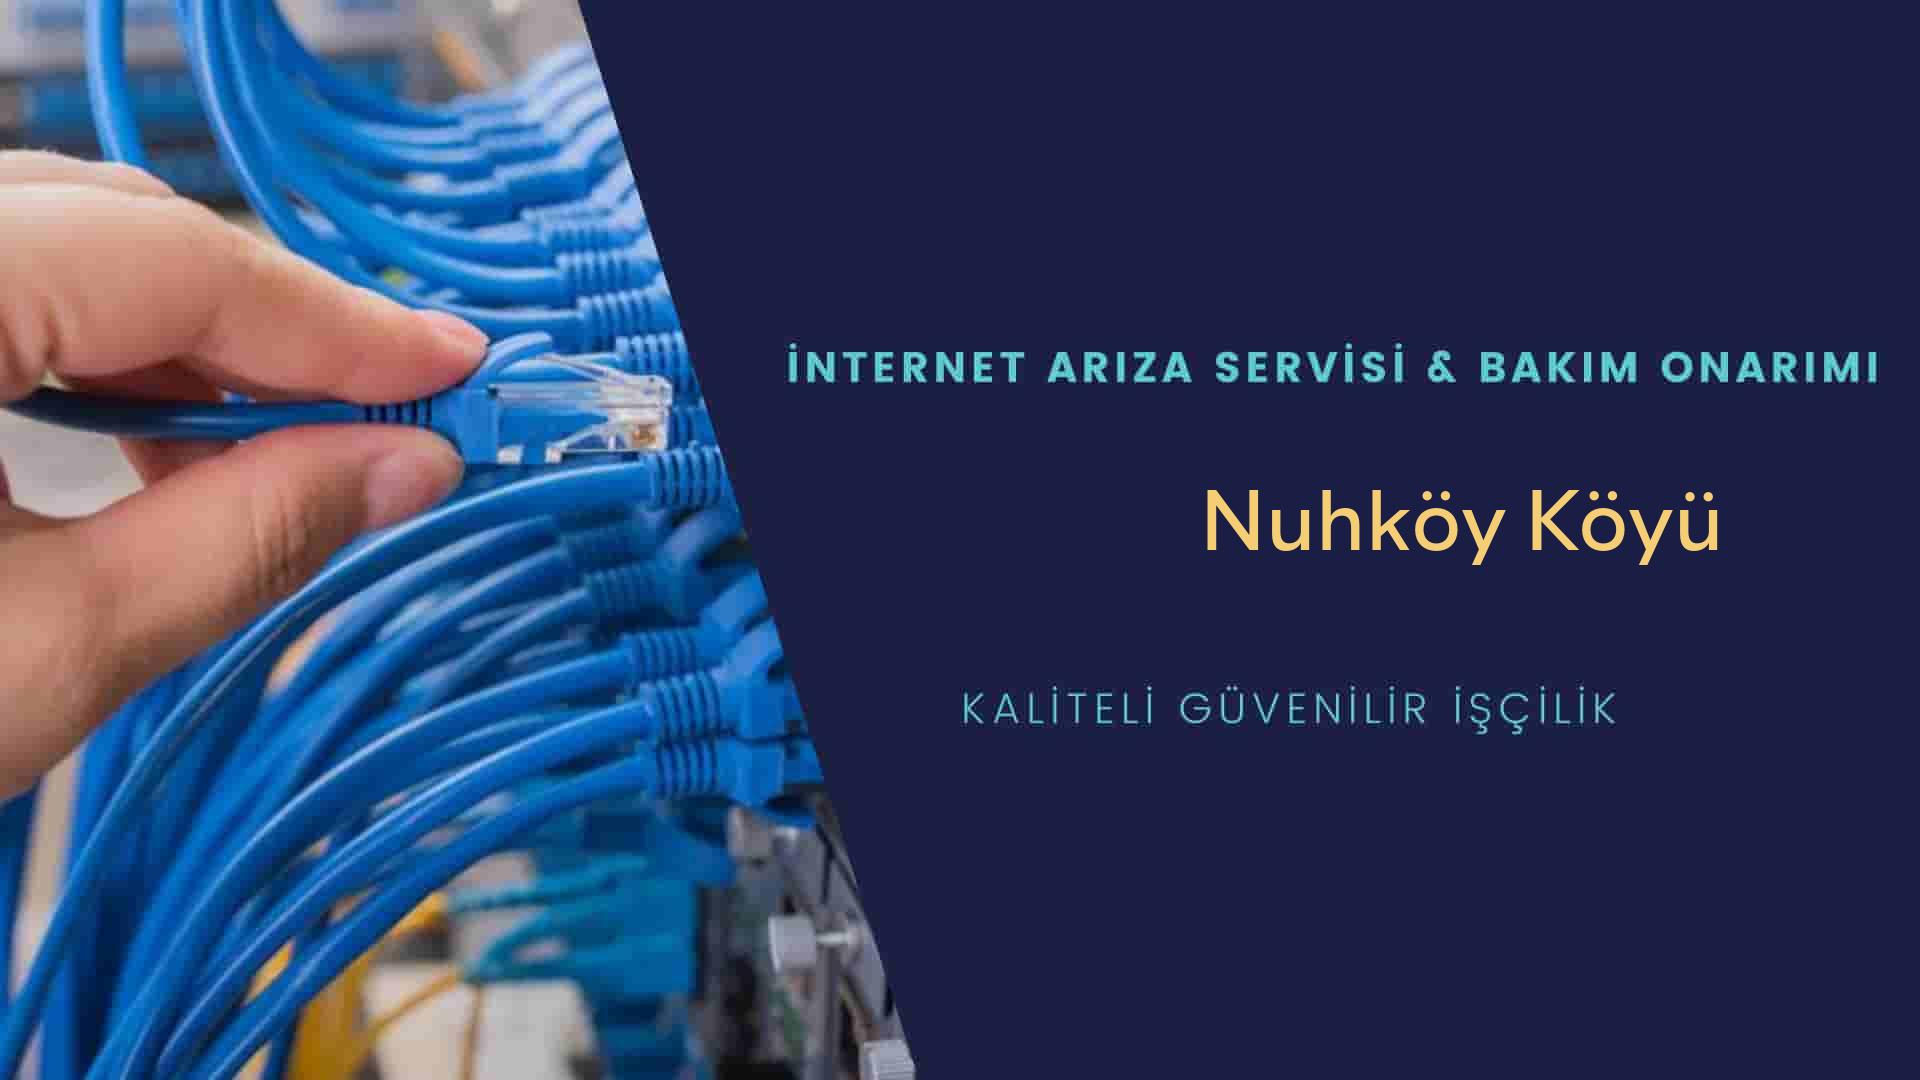 Nuhköy Köyü internet kablosu çekimi yapan yerler veya elektrikçiler mi? arıyorsunuz doğru yerdesiniz o zaman sizlere 7/24 yardımcı olacak profesyonel ustalarımız bir telefon kadar yakındır size.